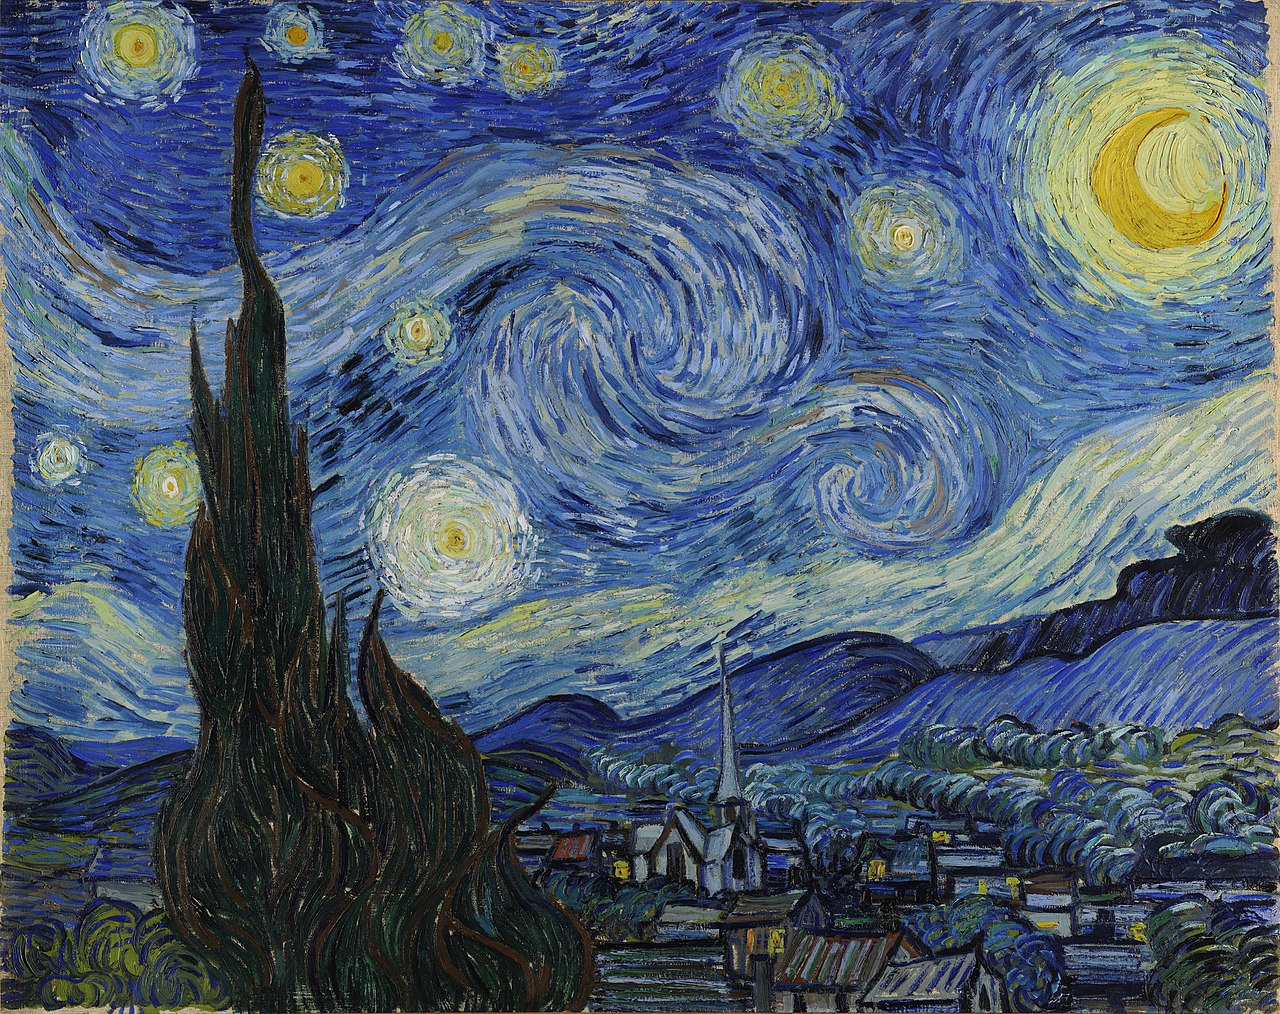 لوحة "ليلة النجوم" لفان غوخ (ويكيبيديا)